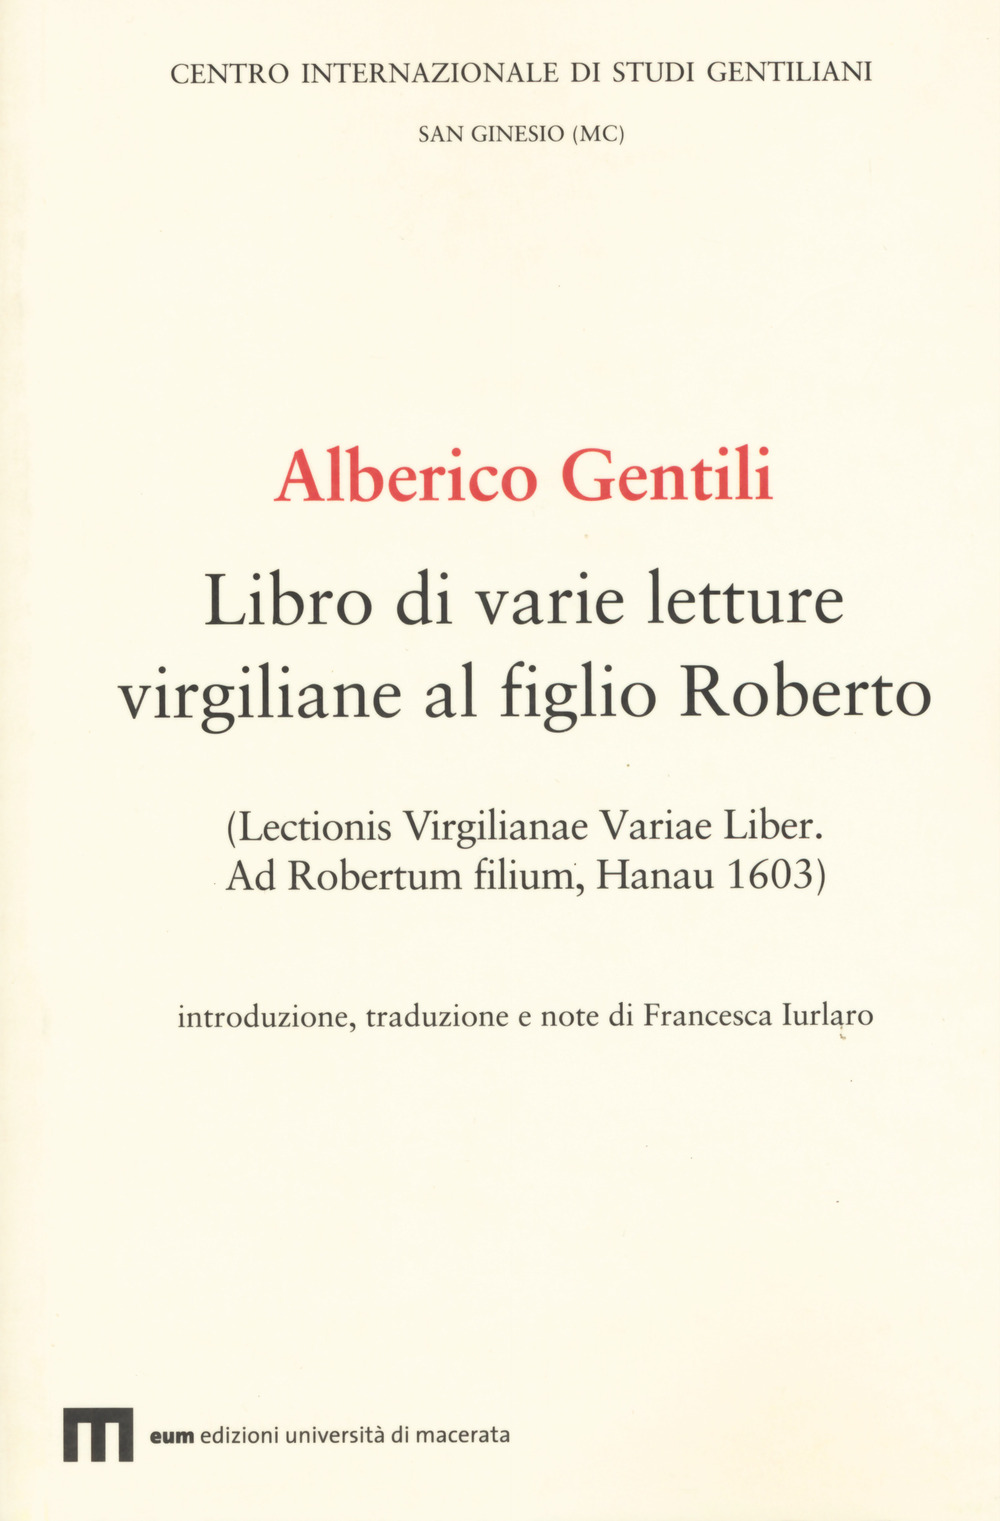 Alberico Gentili. Libro di varie letture virgiliane al figlio Roberto (Lectionis virgilianae variae liber. Ad Robertum filium, Hanau 1603)